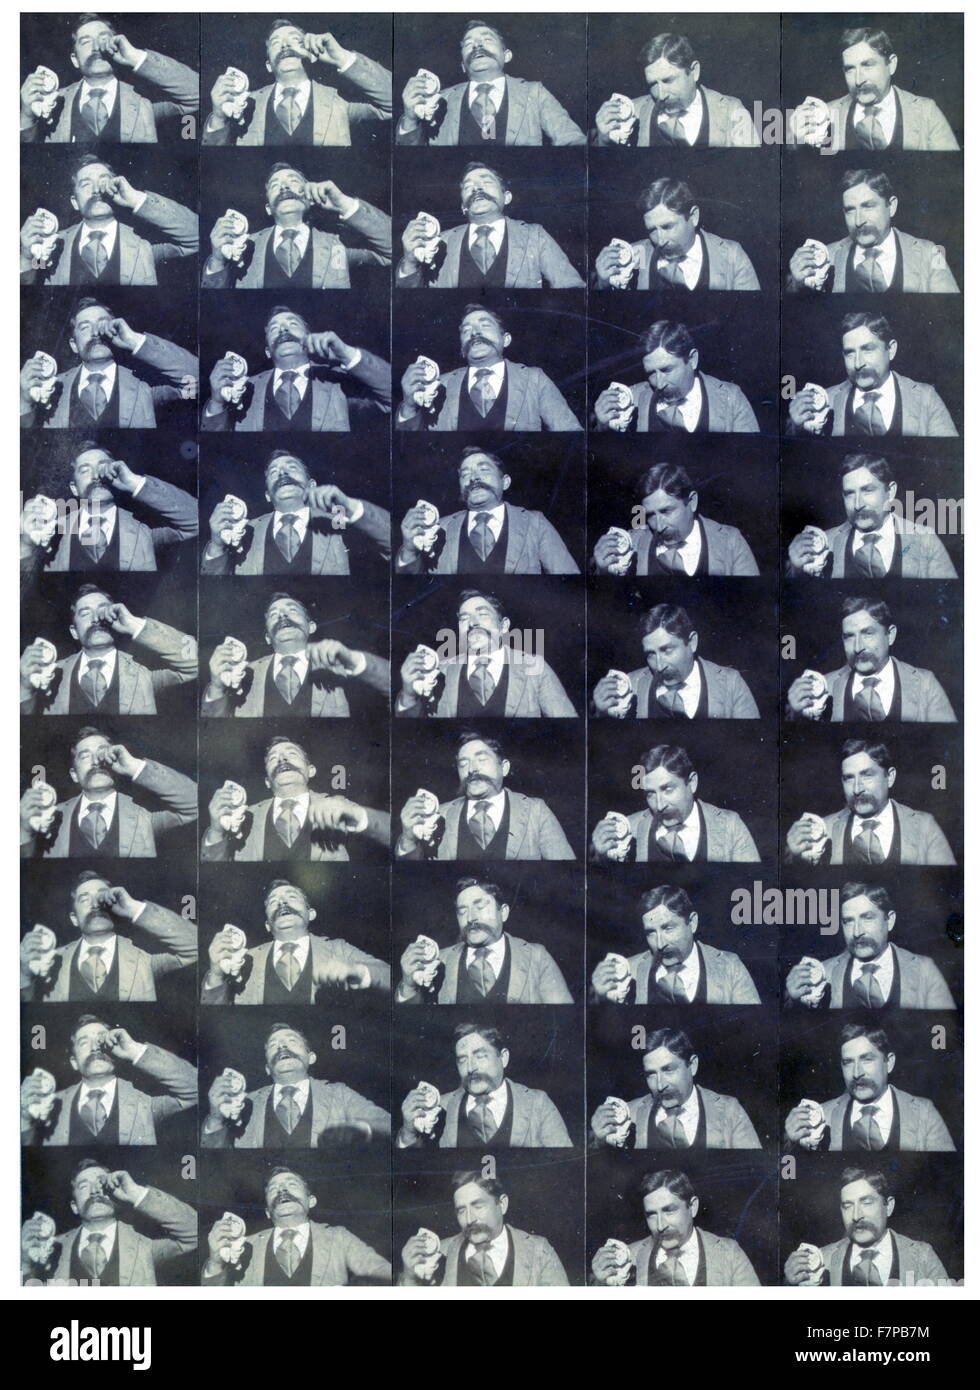 Edison Kinetoscopic Datensatz ein Niesen "Fred Otts Niesen". Fotodruck: Gelatine ausdrucken Papier. Foto besteht aus 45 Rahmen für einen Film zeigt einen Mann, Fred Ott, Niesen. Es wurde von Fotograf William Kennedy Laurie (1860-1935) aufgenommen. Diese Fotoabzug ist die früheste erhaltene "Motion Picture" eingetragen für Urheberrecht am 9. Januar 1894. Umgangssprachlich bekannt als "Fred Otts Niesen, für seinen Stern (Ingenieur Edison), das Foto stellt die Morgendämmerung des Filmemachens in Amerika zwar etwas von einem historischen Unfall bleiben. Stockfoto